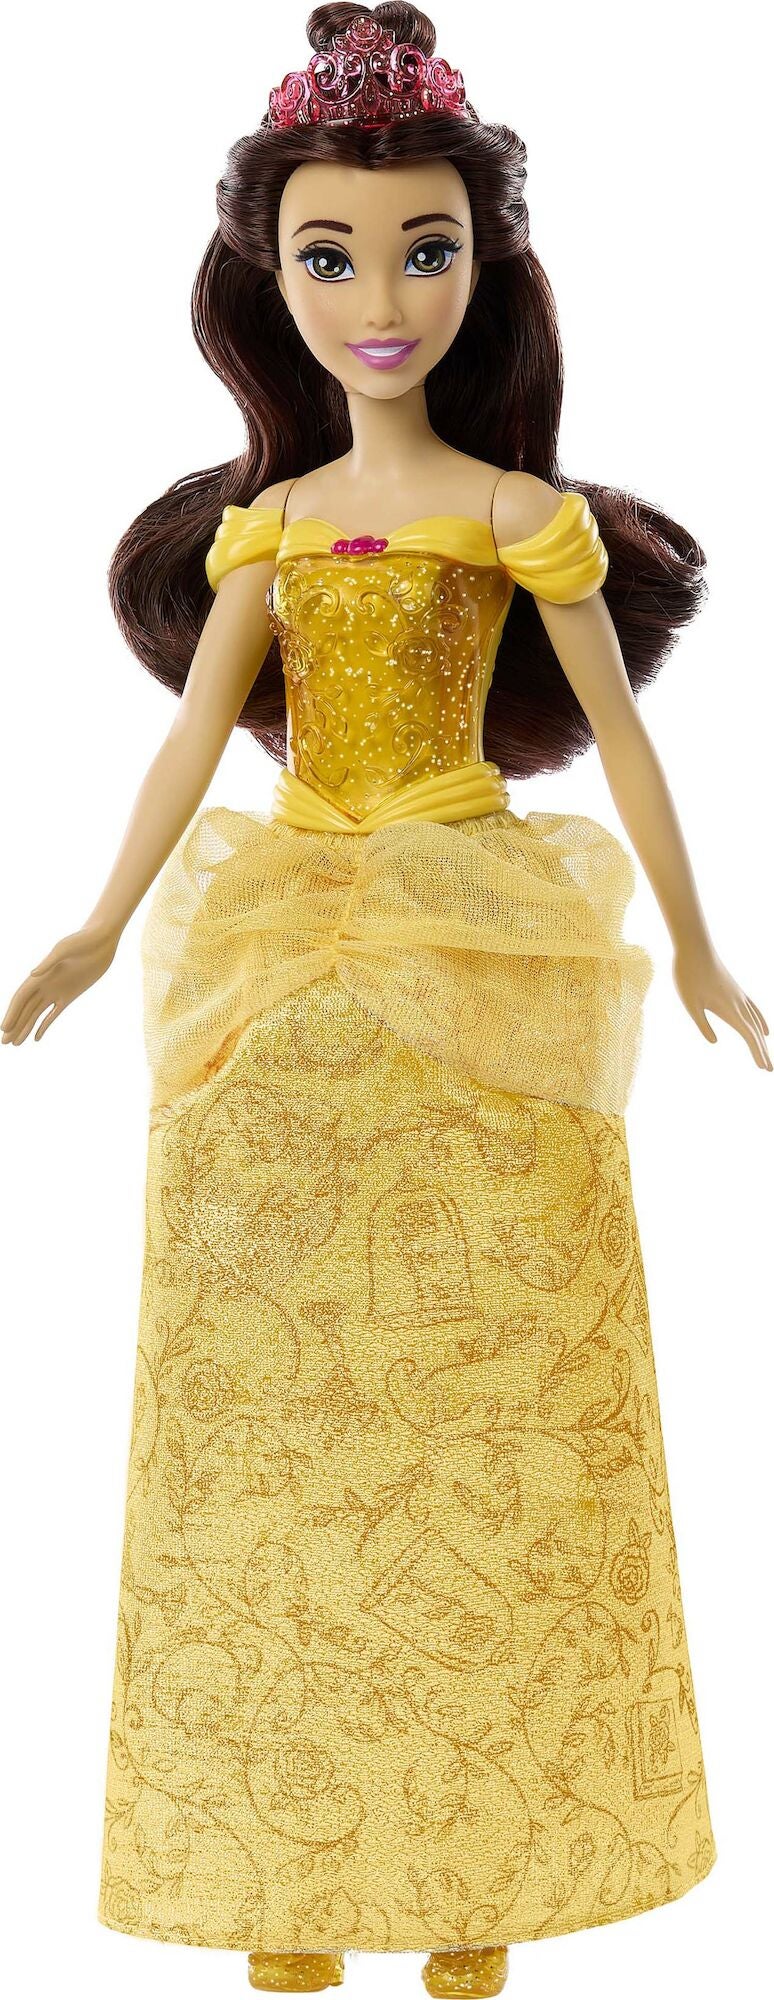 Disney Prinzessinnen Belle Puppe 28cm von Disney Prinzessin